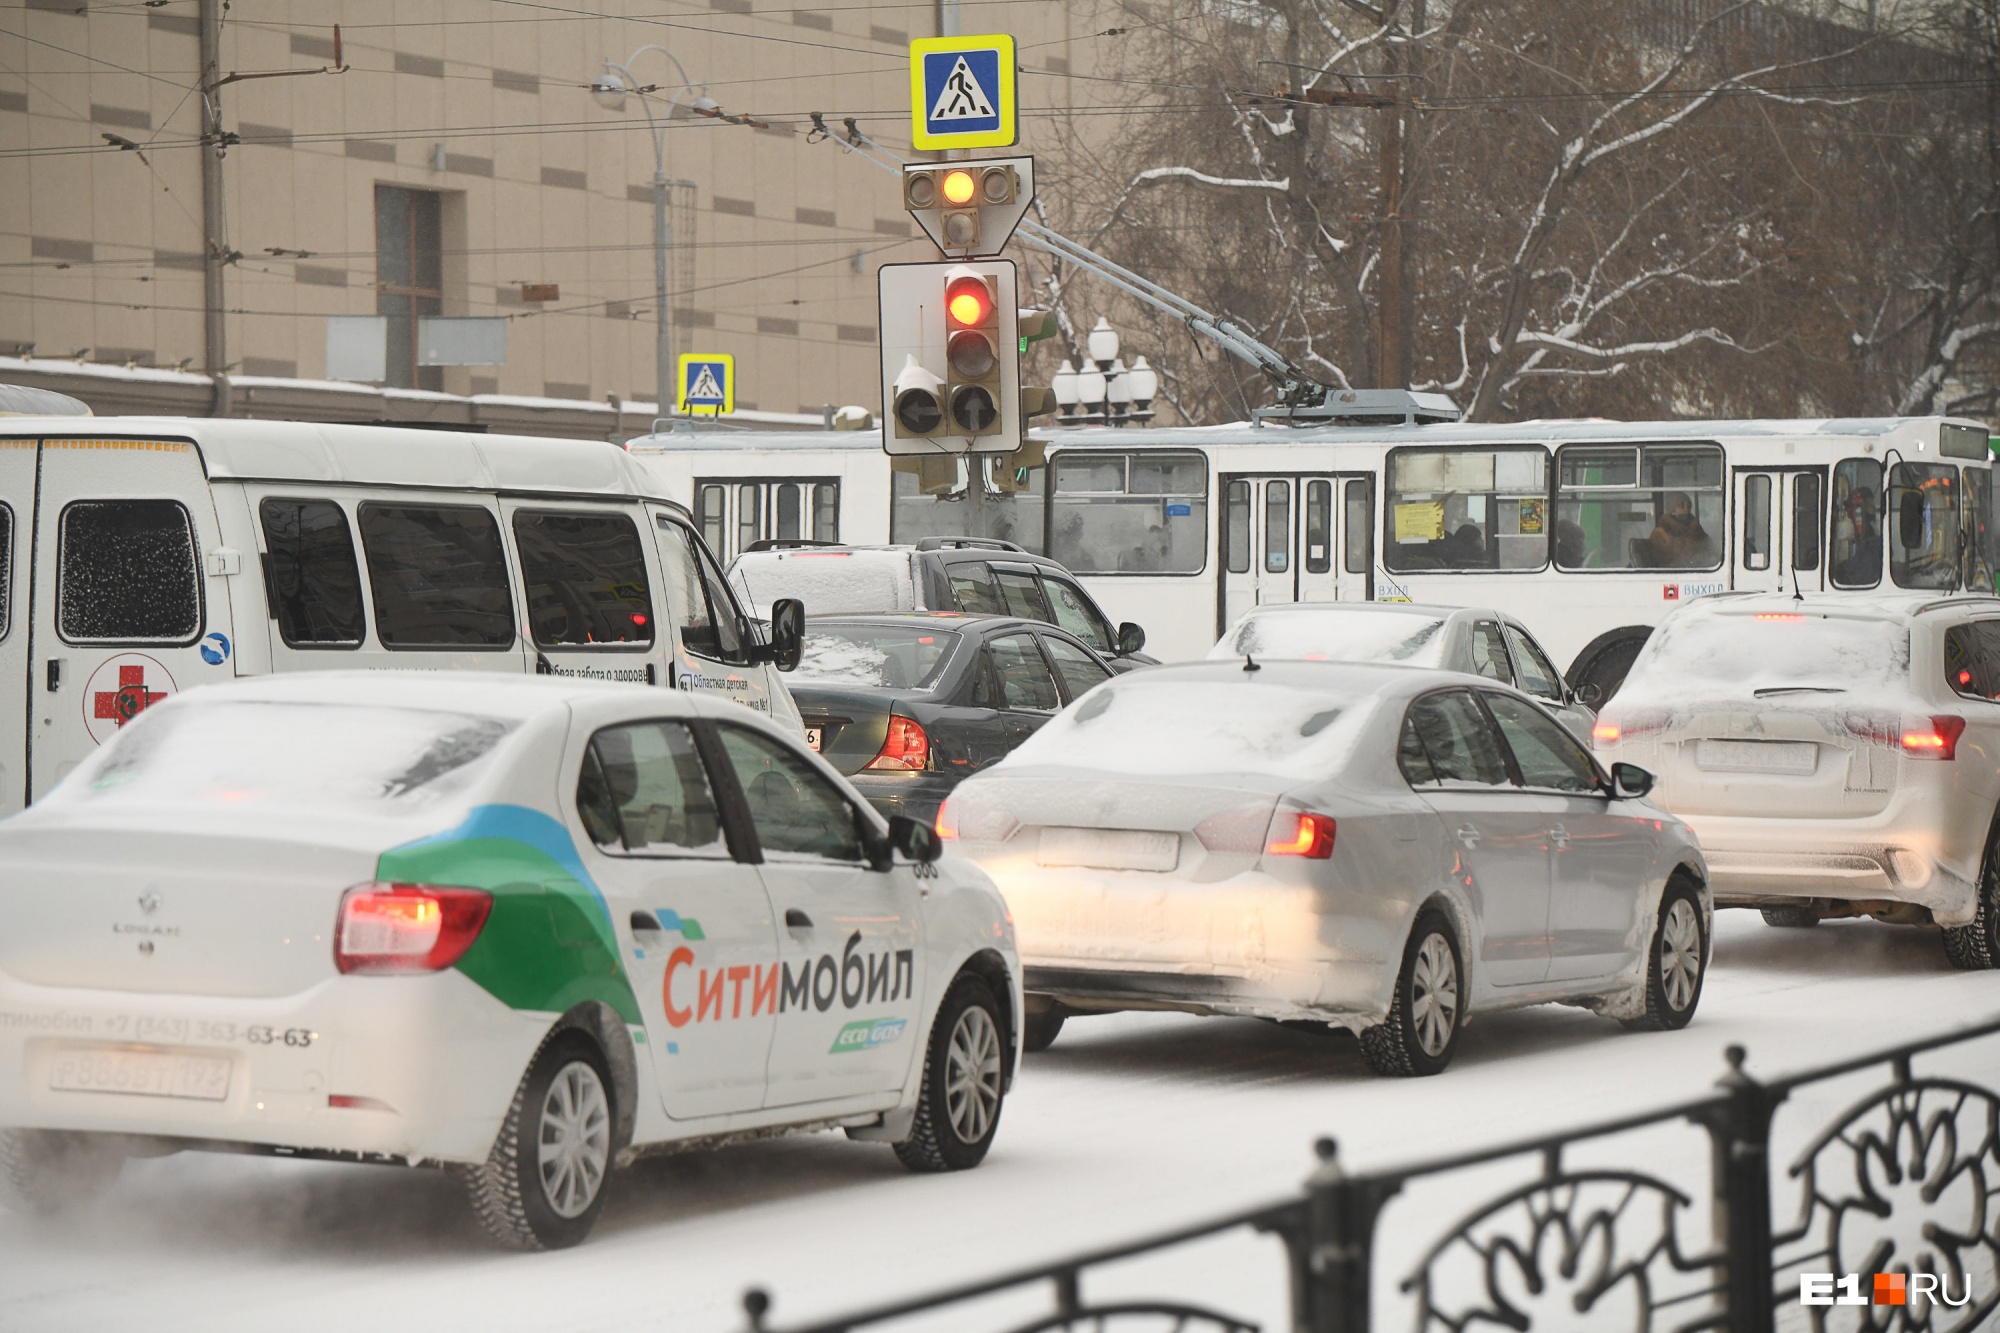 Стало известно, когда в Екатеринбурге перестанет работать «Ситимобил»